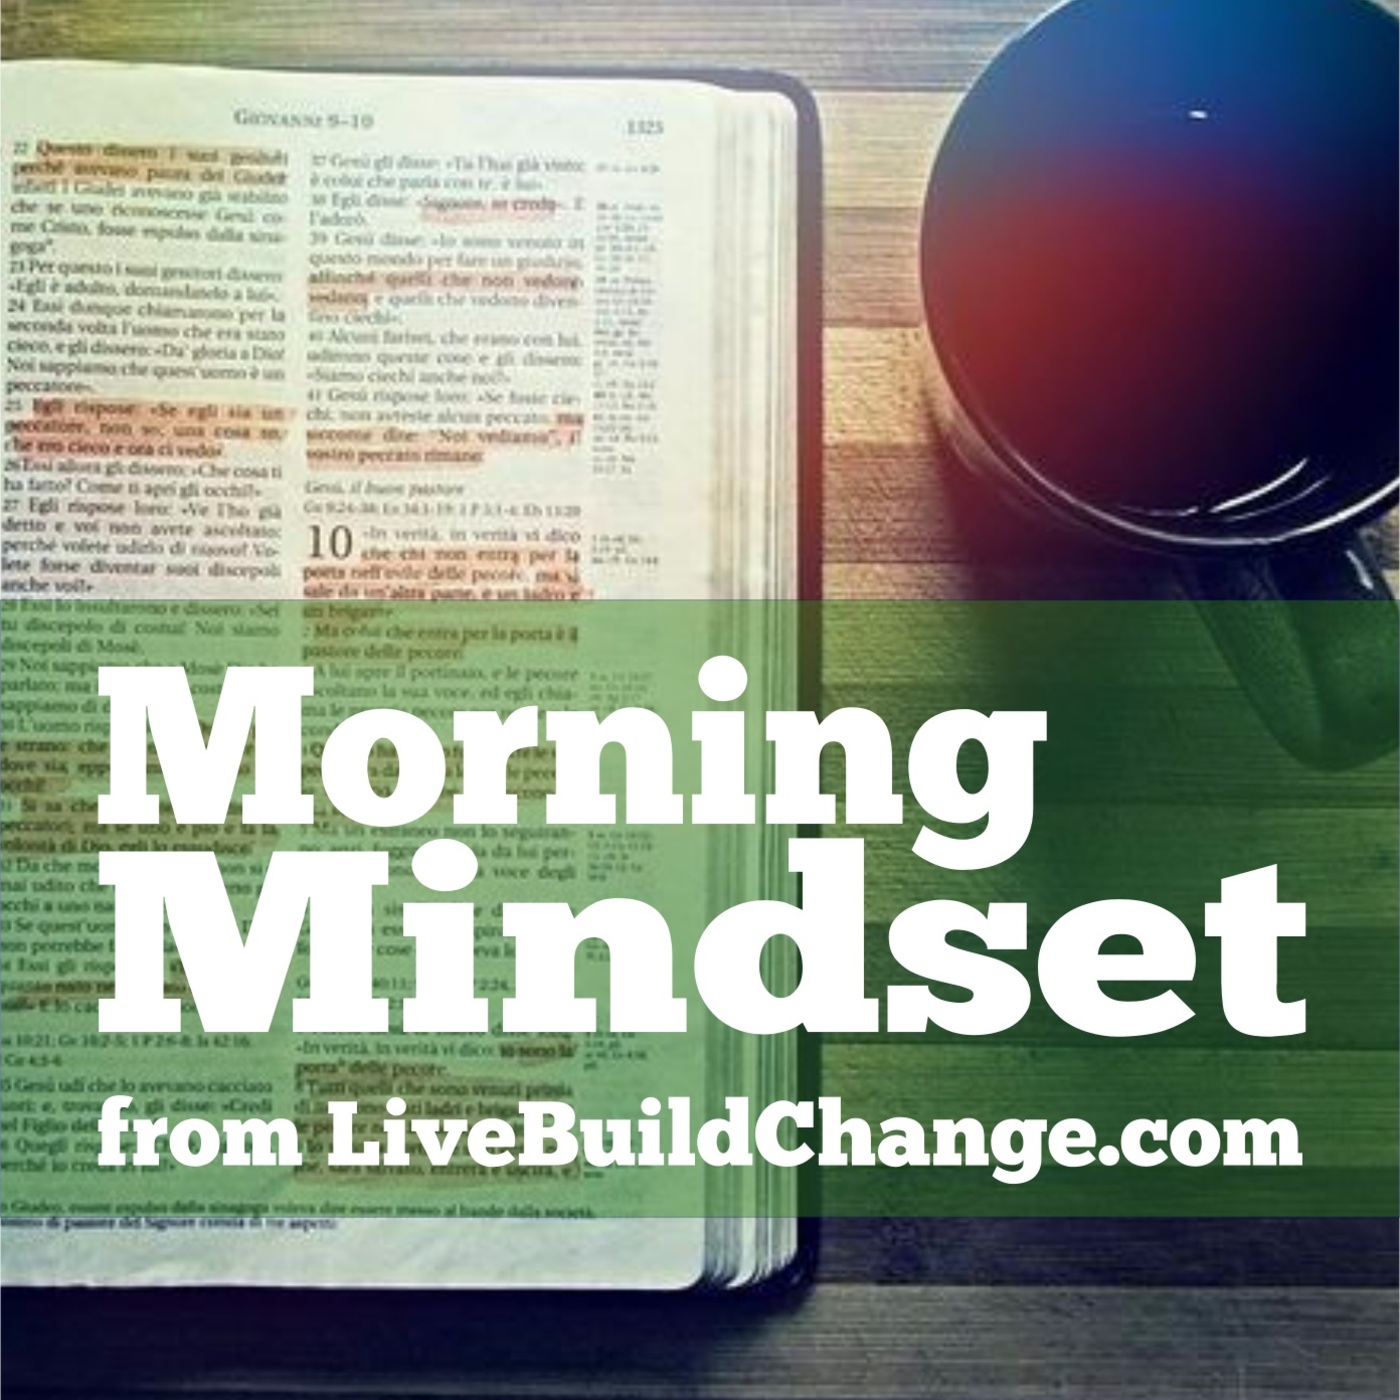 November 24 Morning Mindset from Live Build Change